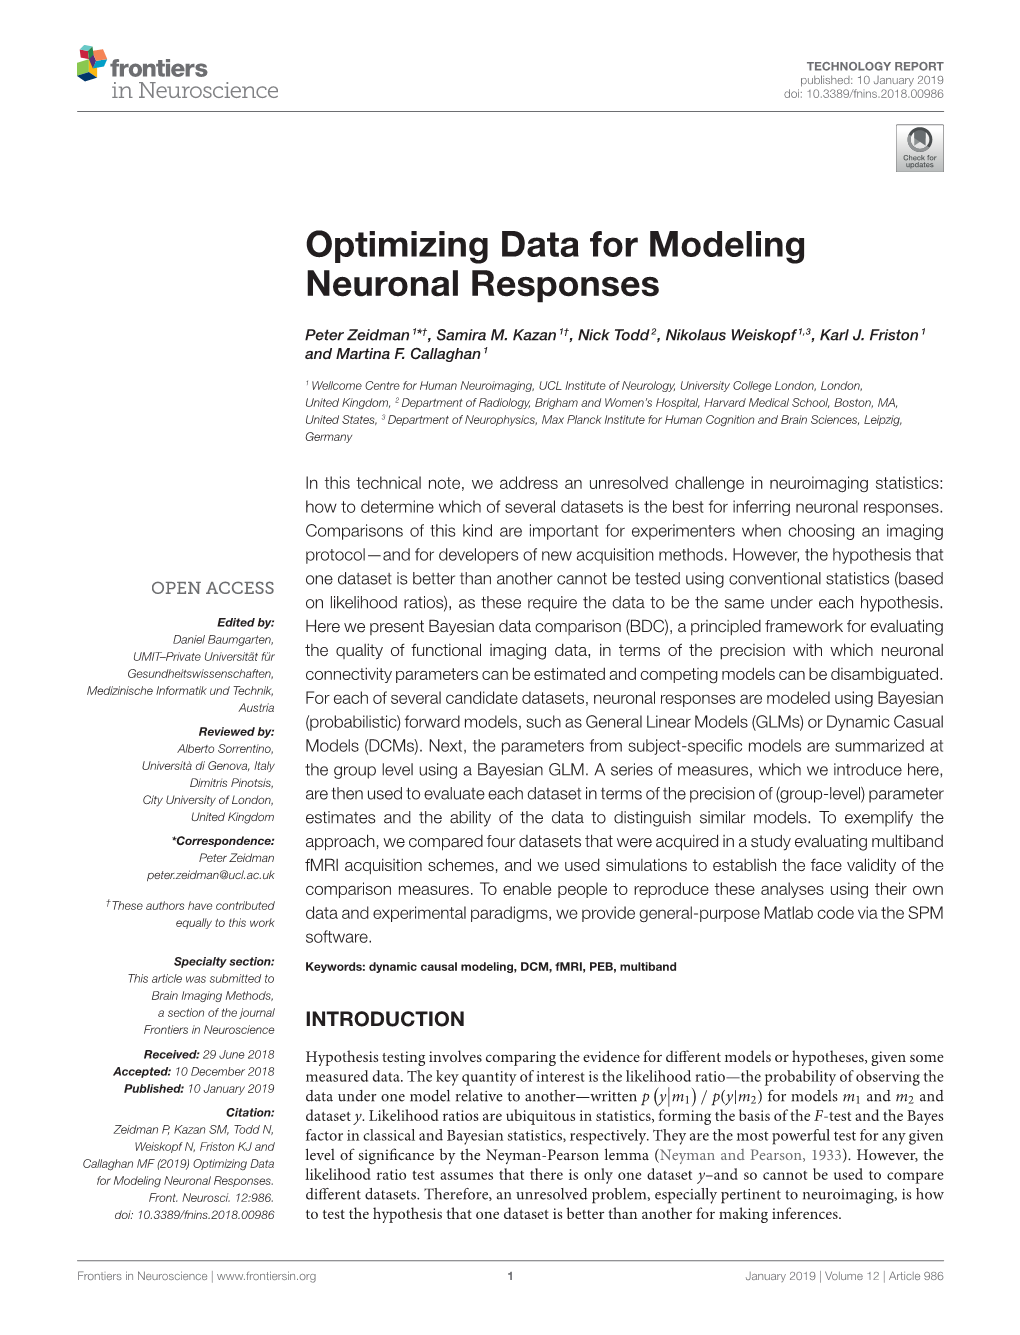 Optimizing Data for Modeling Neuronal Responses